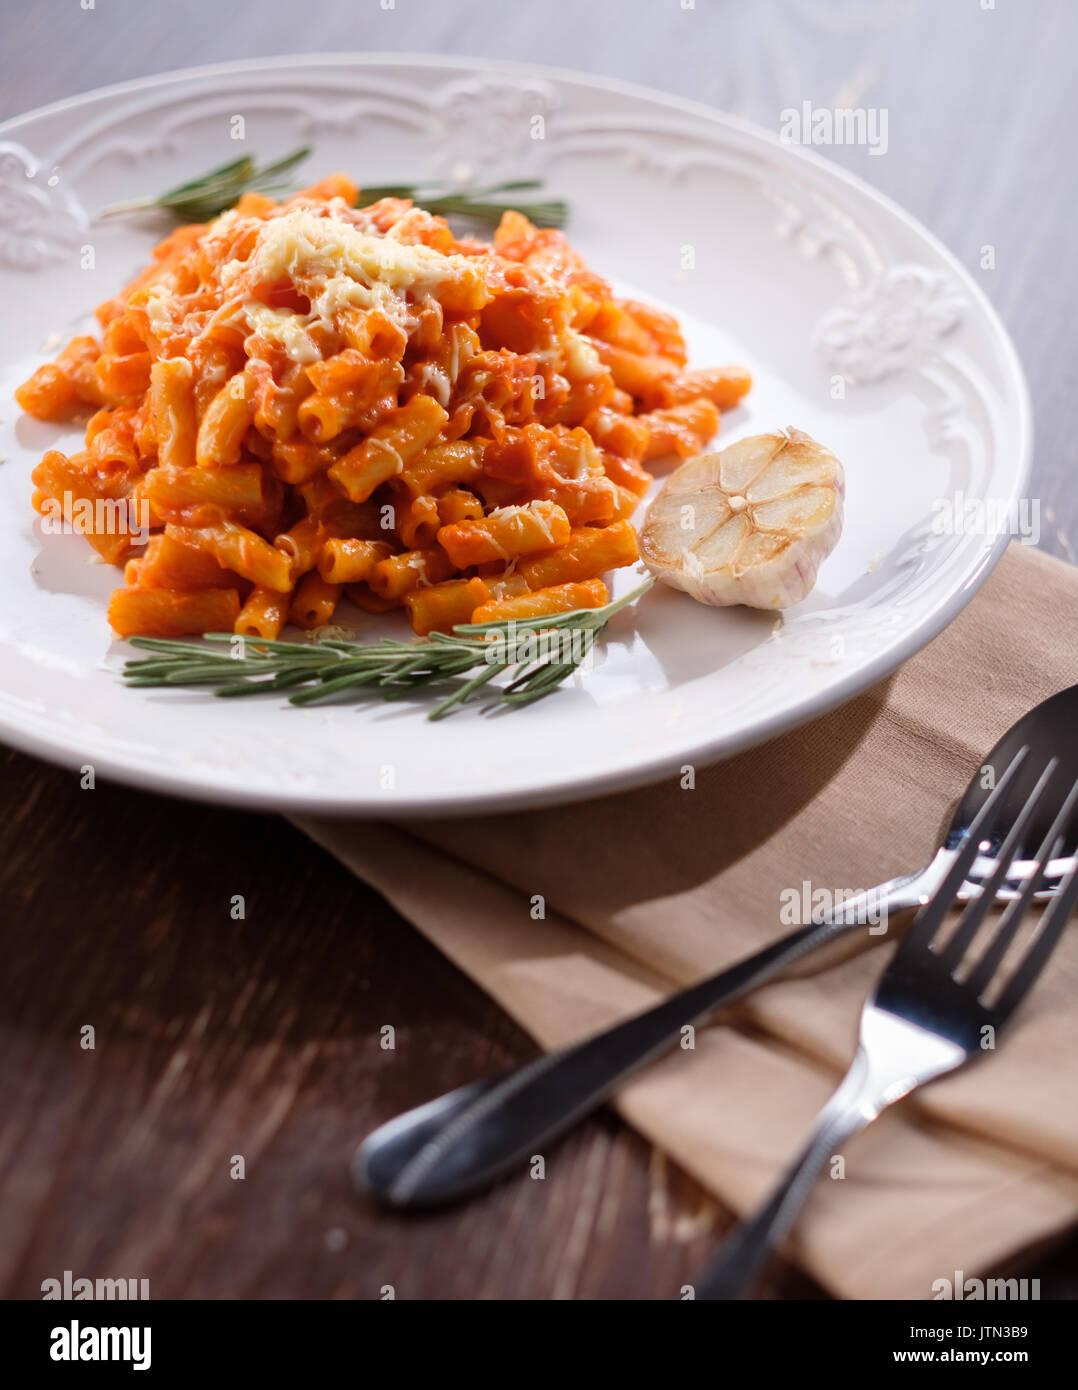 Italienische Pasta mit Tomaten, Käse und Knoblauch. close-up auf einem Teller mit geschmolzenem Käse. Stockfoto